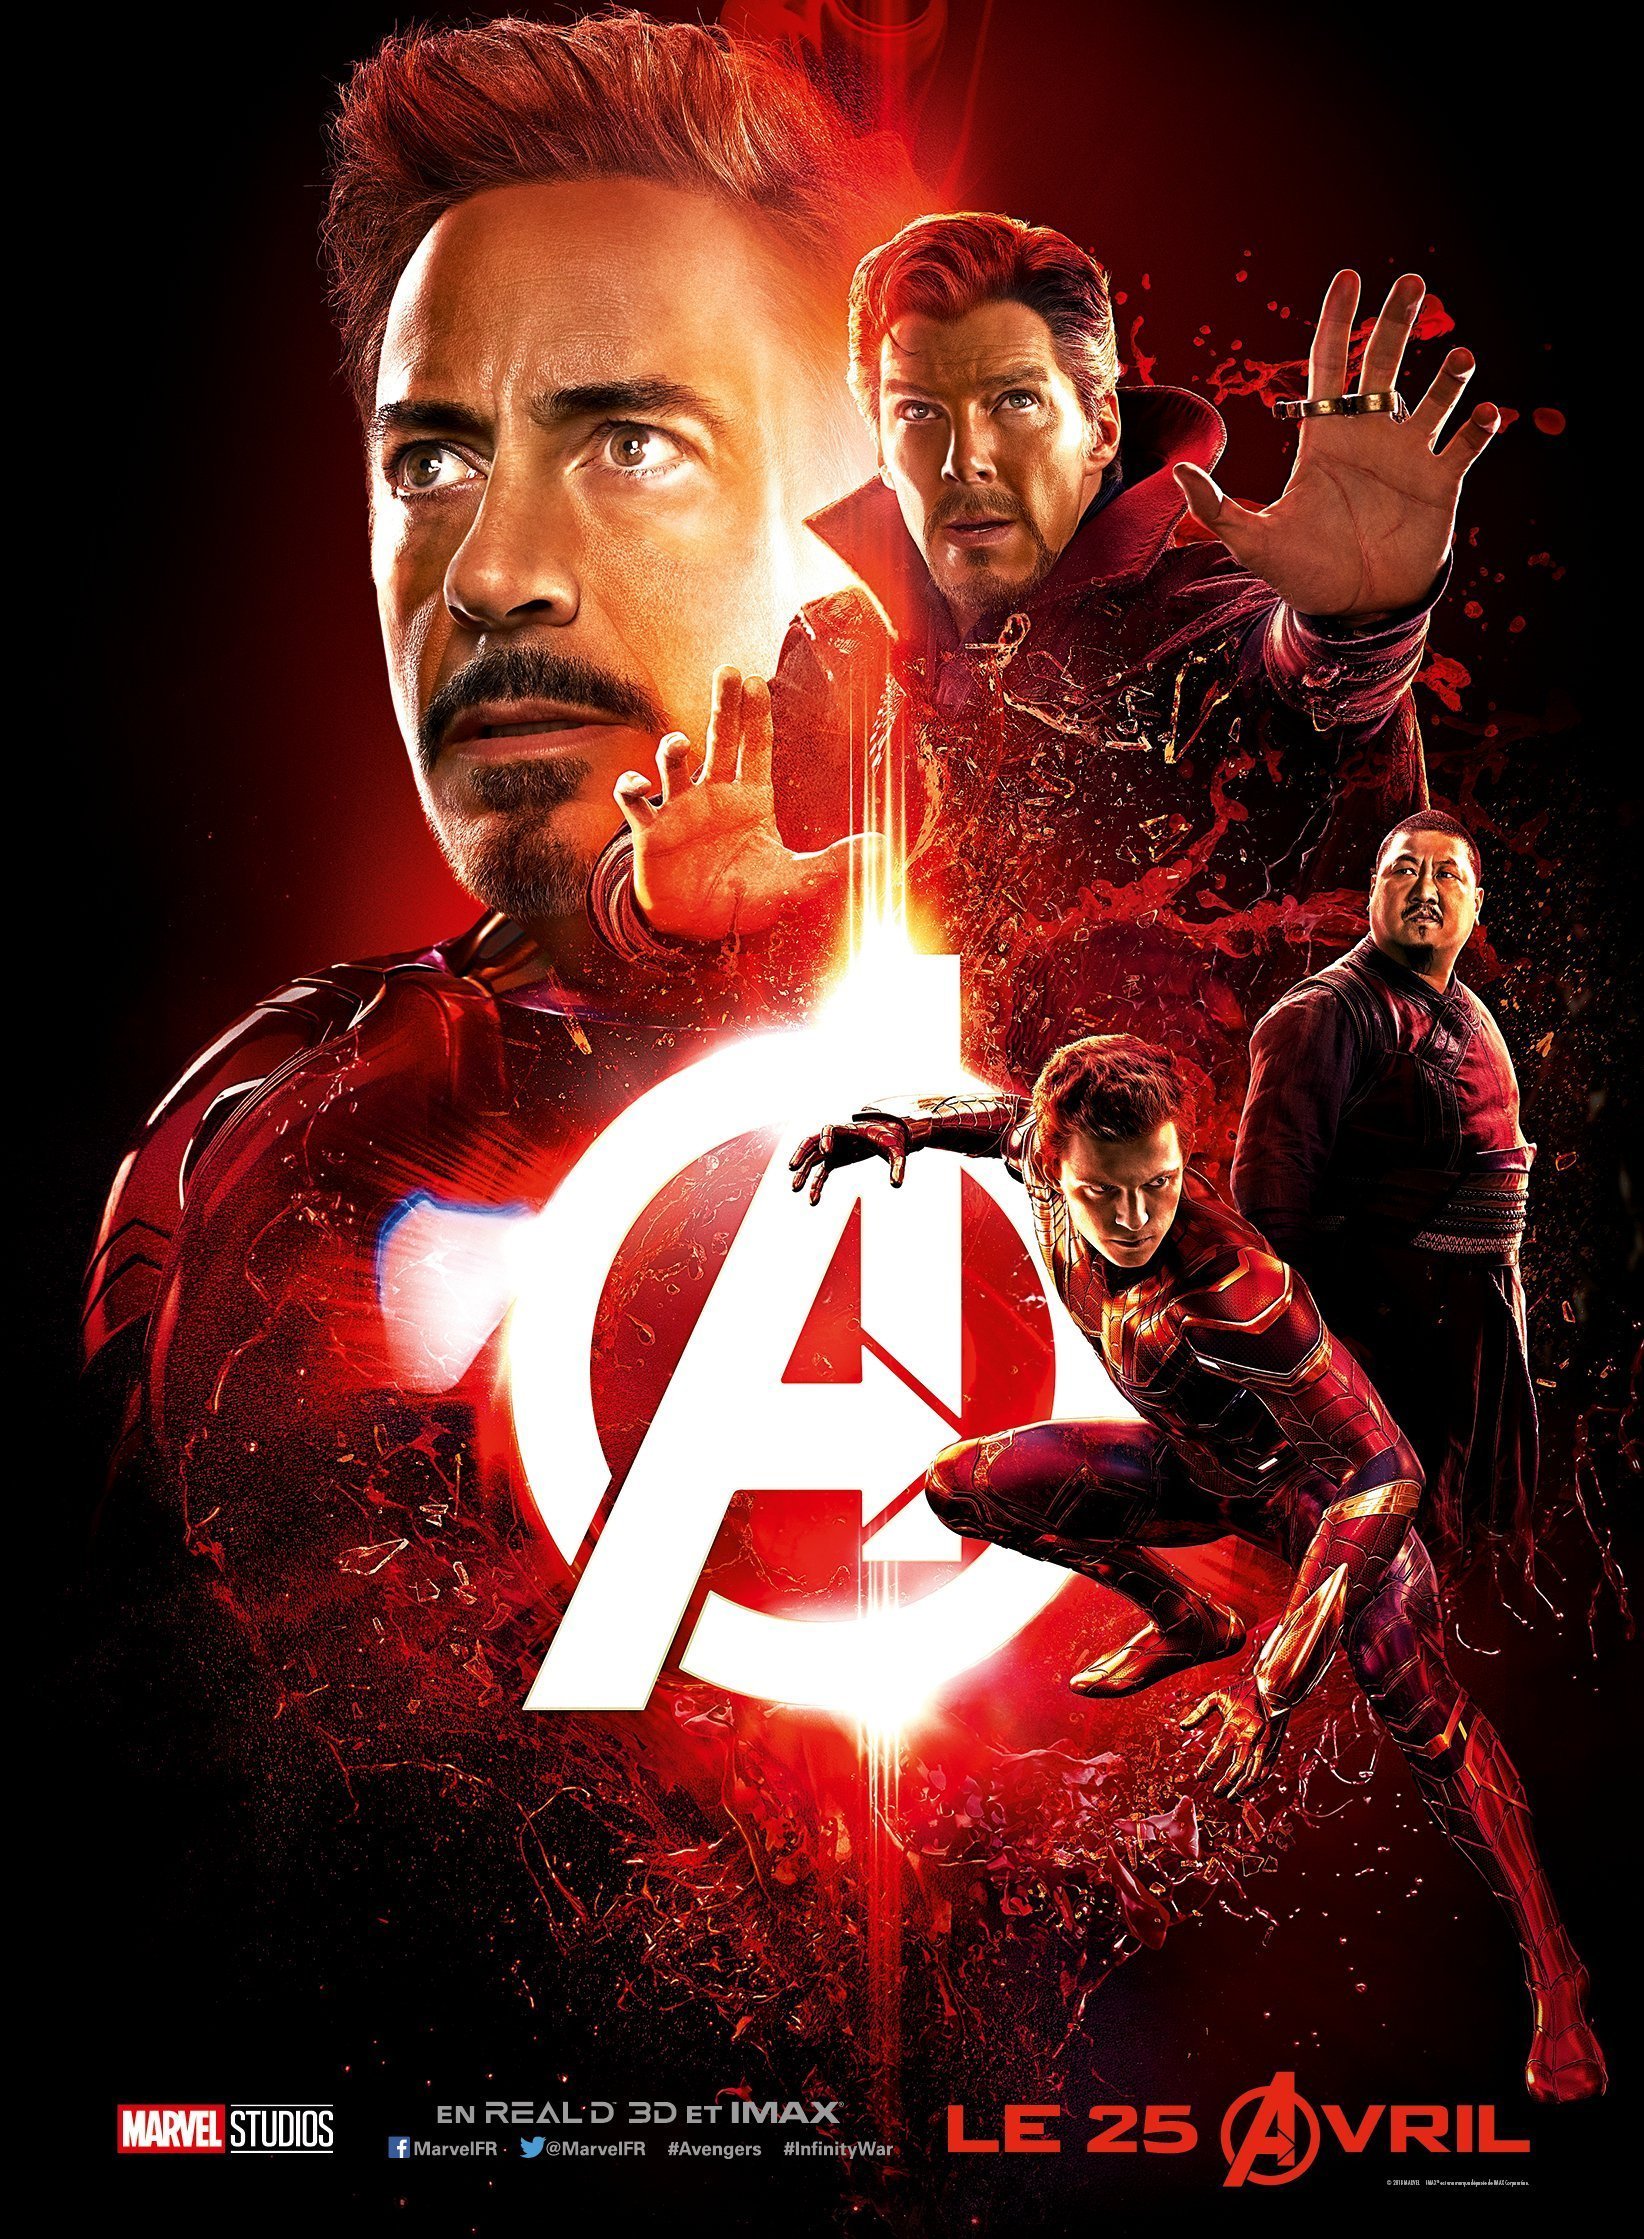 Affiche du film Avengers: Infinity War avec l'équipe rouge